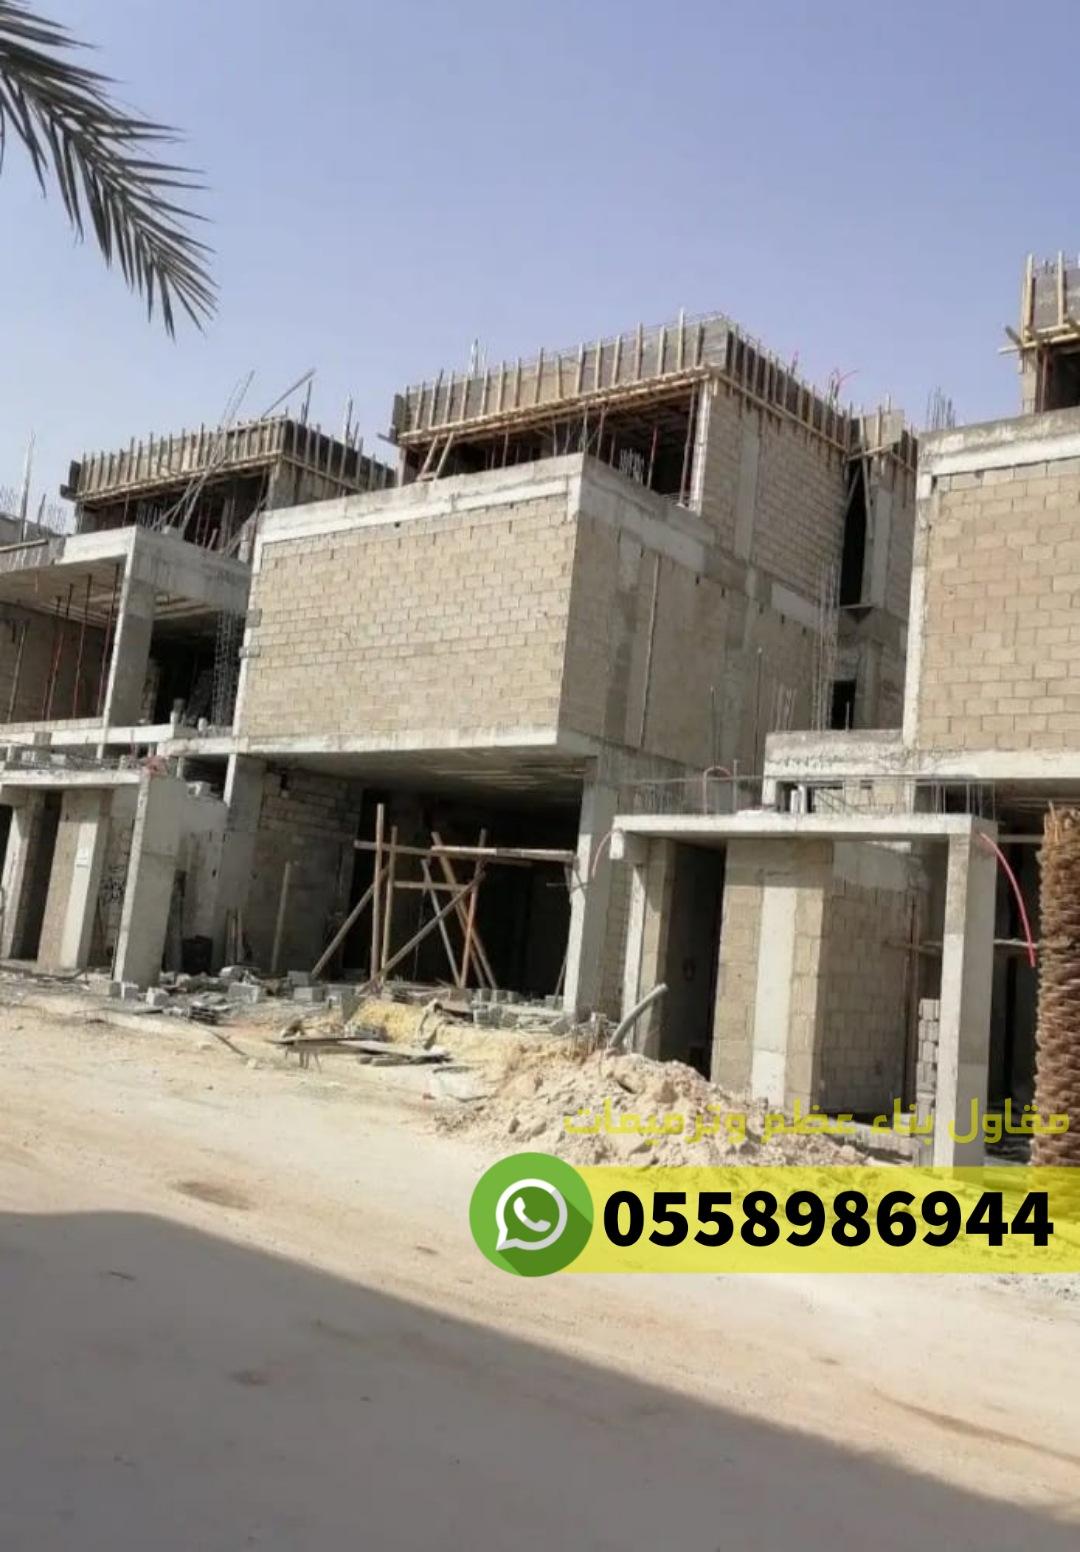 مقاول معماري في جدة, 0558986944 389831850